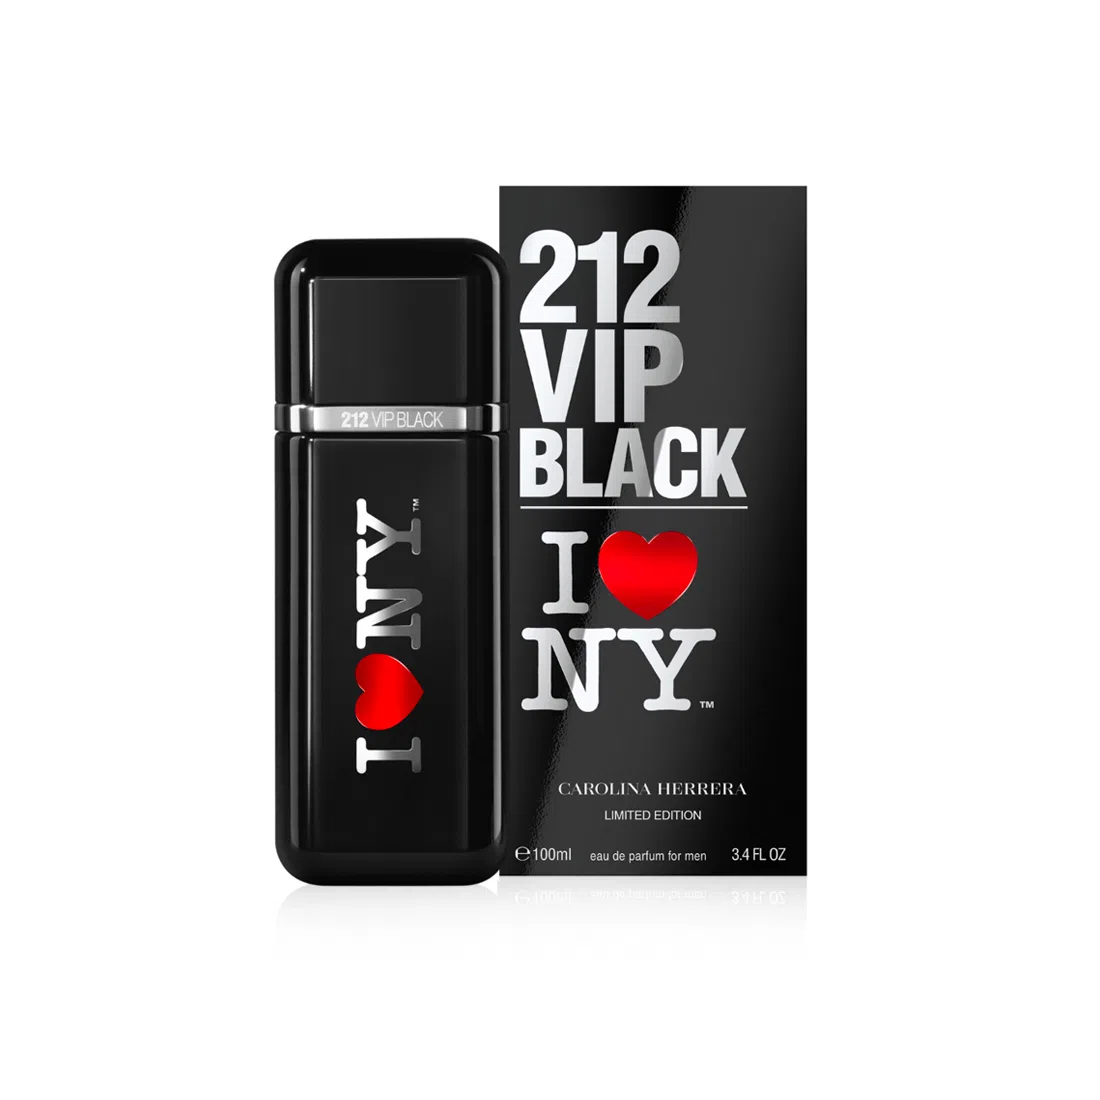 Perfume-Carolina-Herrera-212-Vip-Black-I-LOVE-NY-H